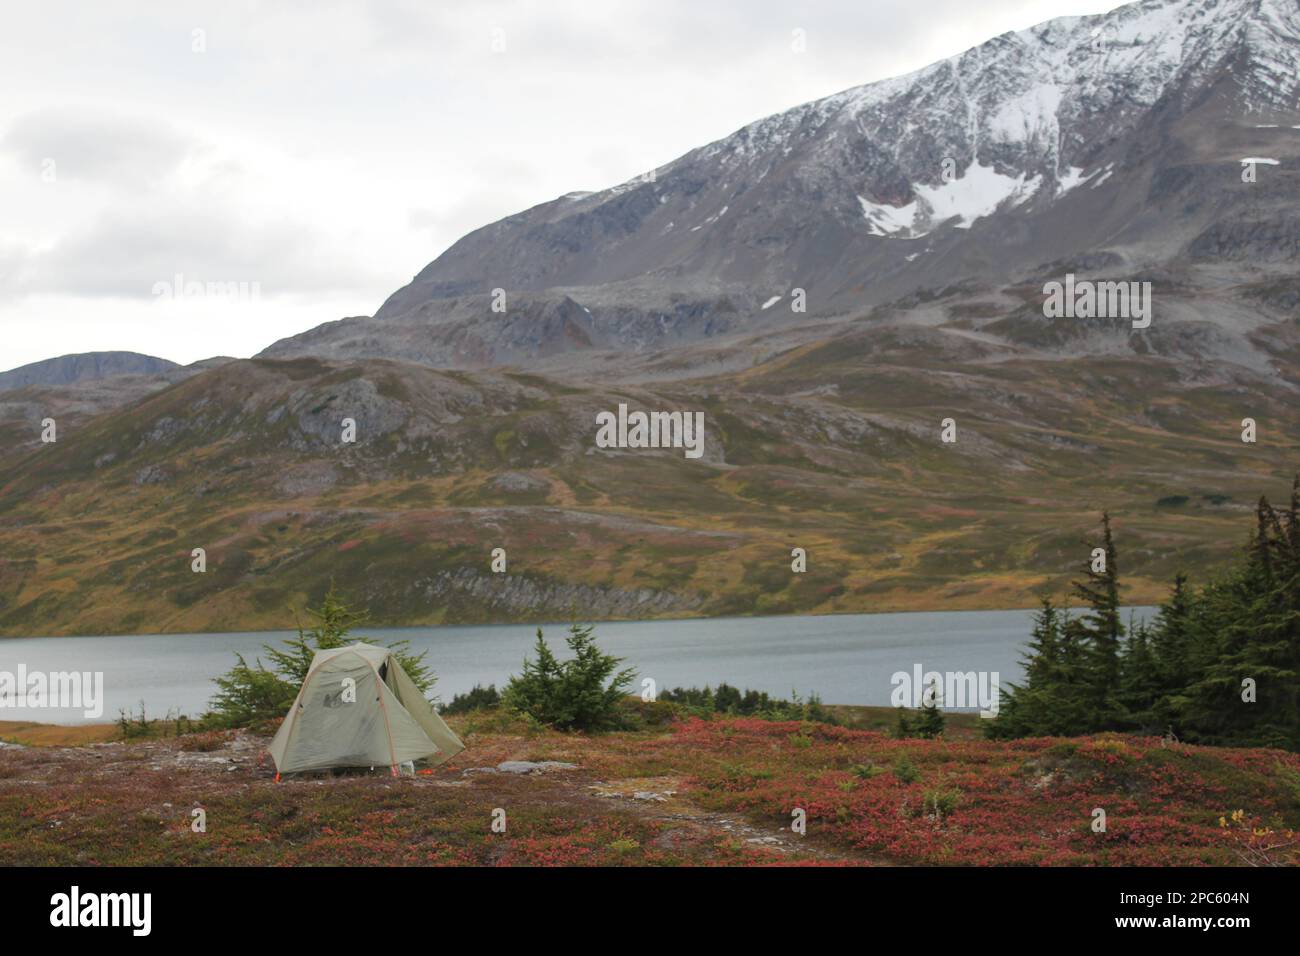 Tenda alaska immagini e fotografie stock ad alta risoluzione - Alamy